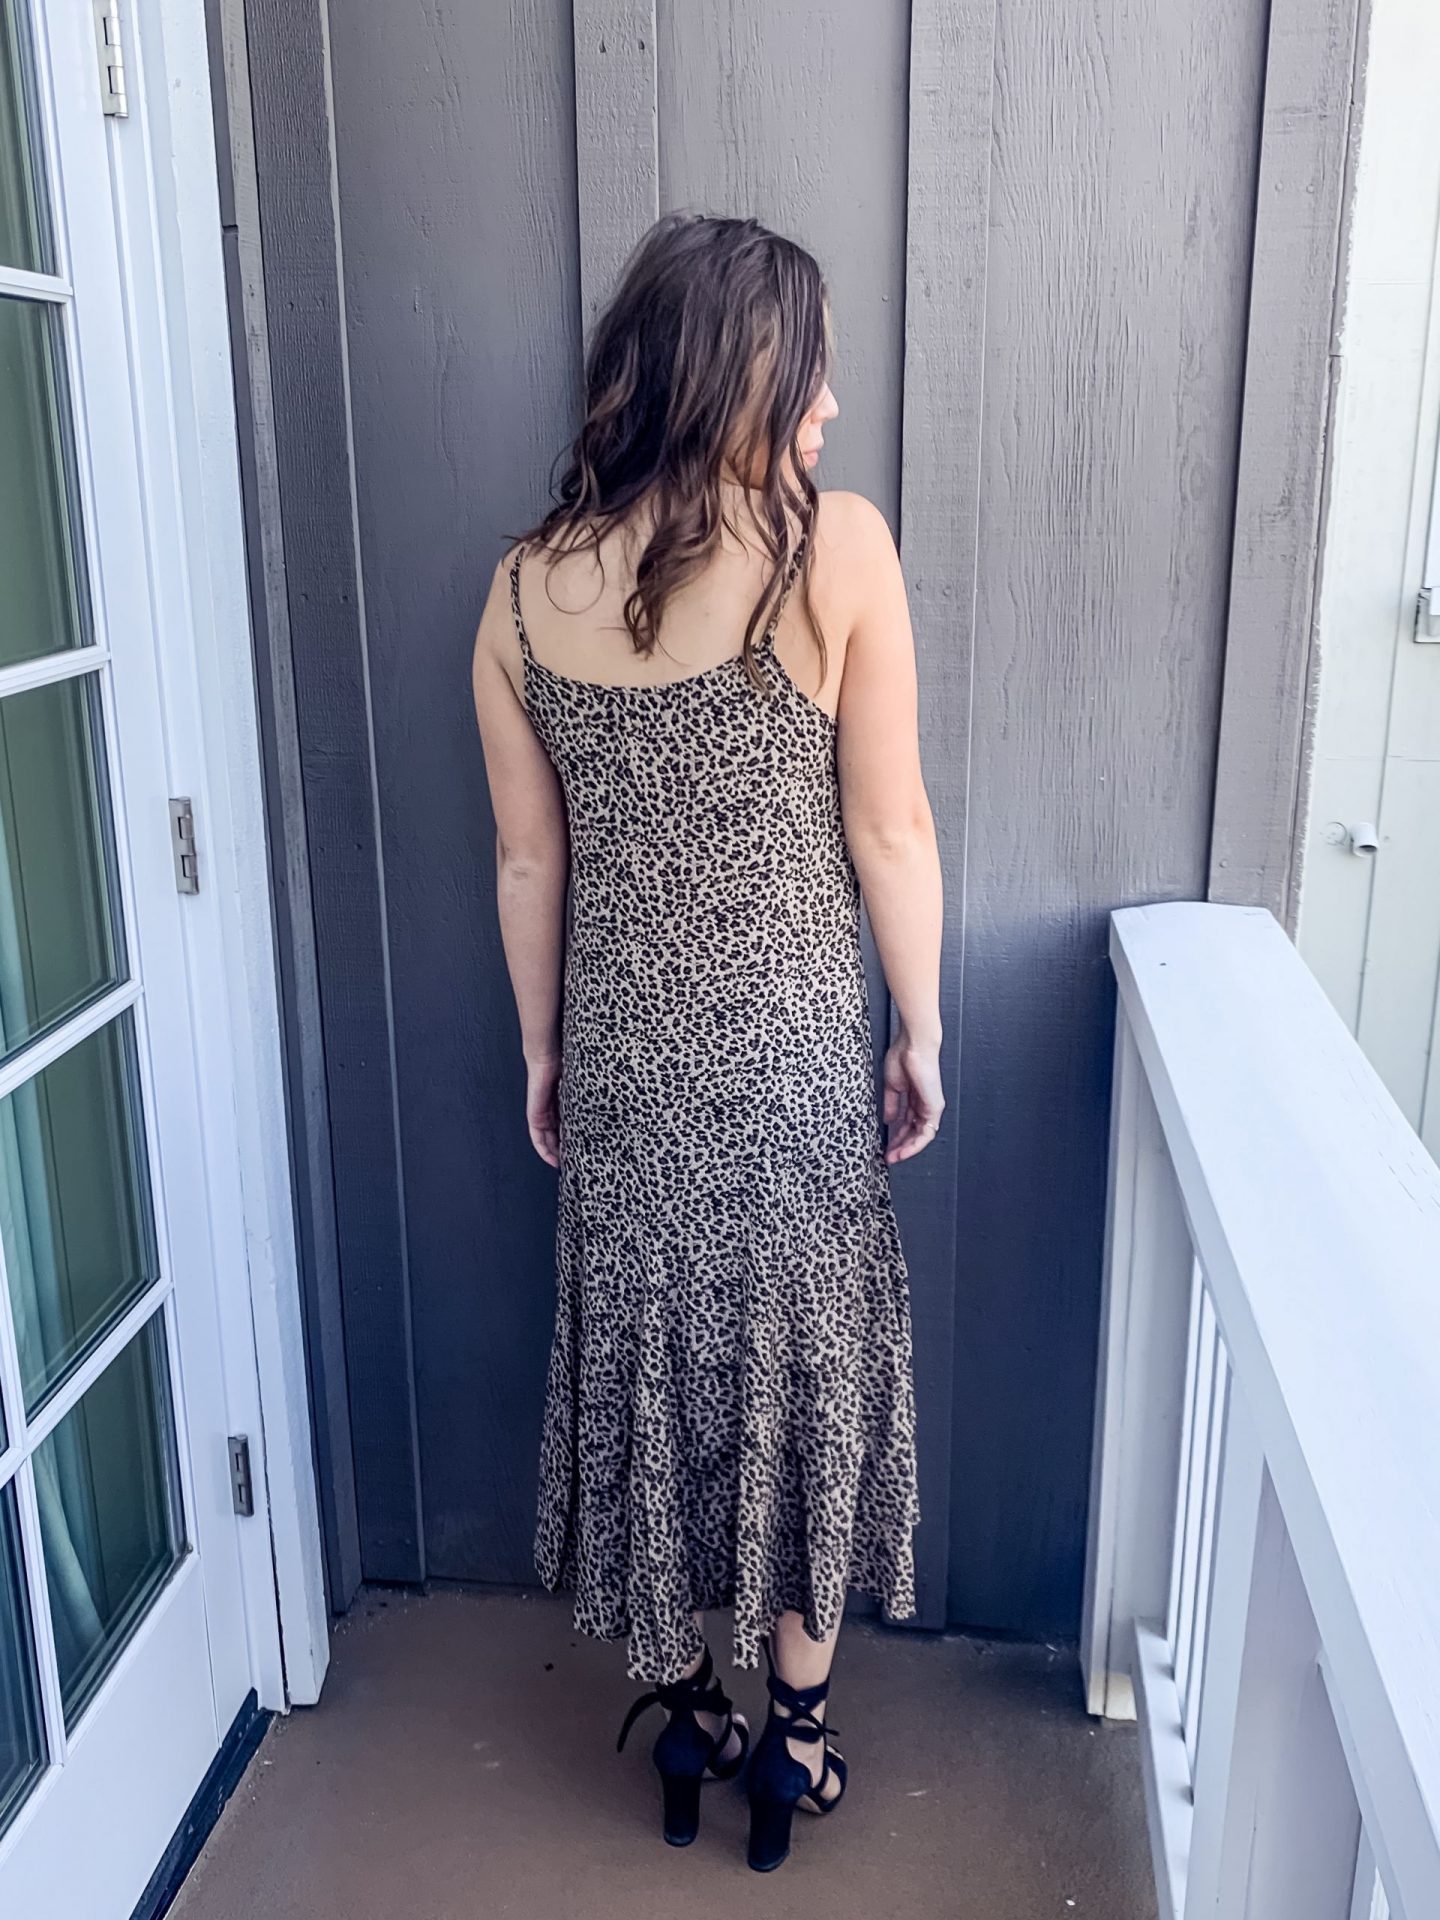 Fall Style - Leopard Print Midi Dress